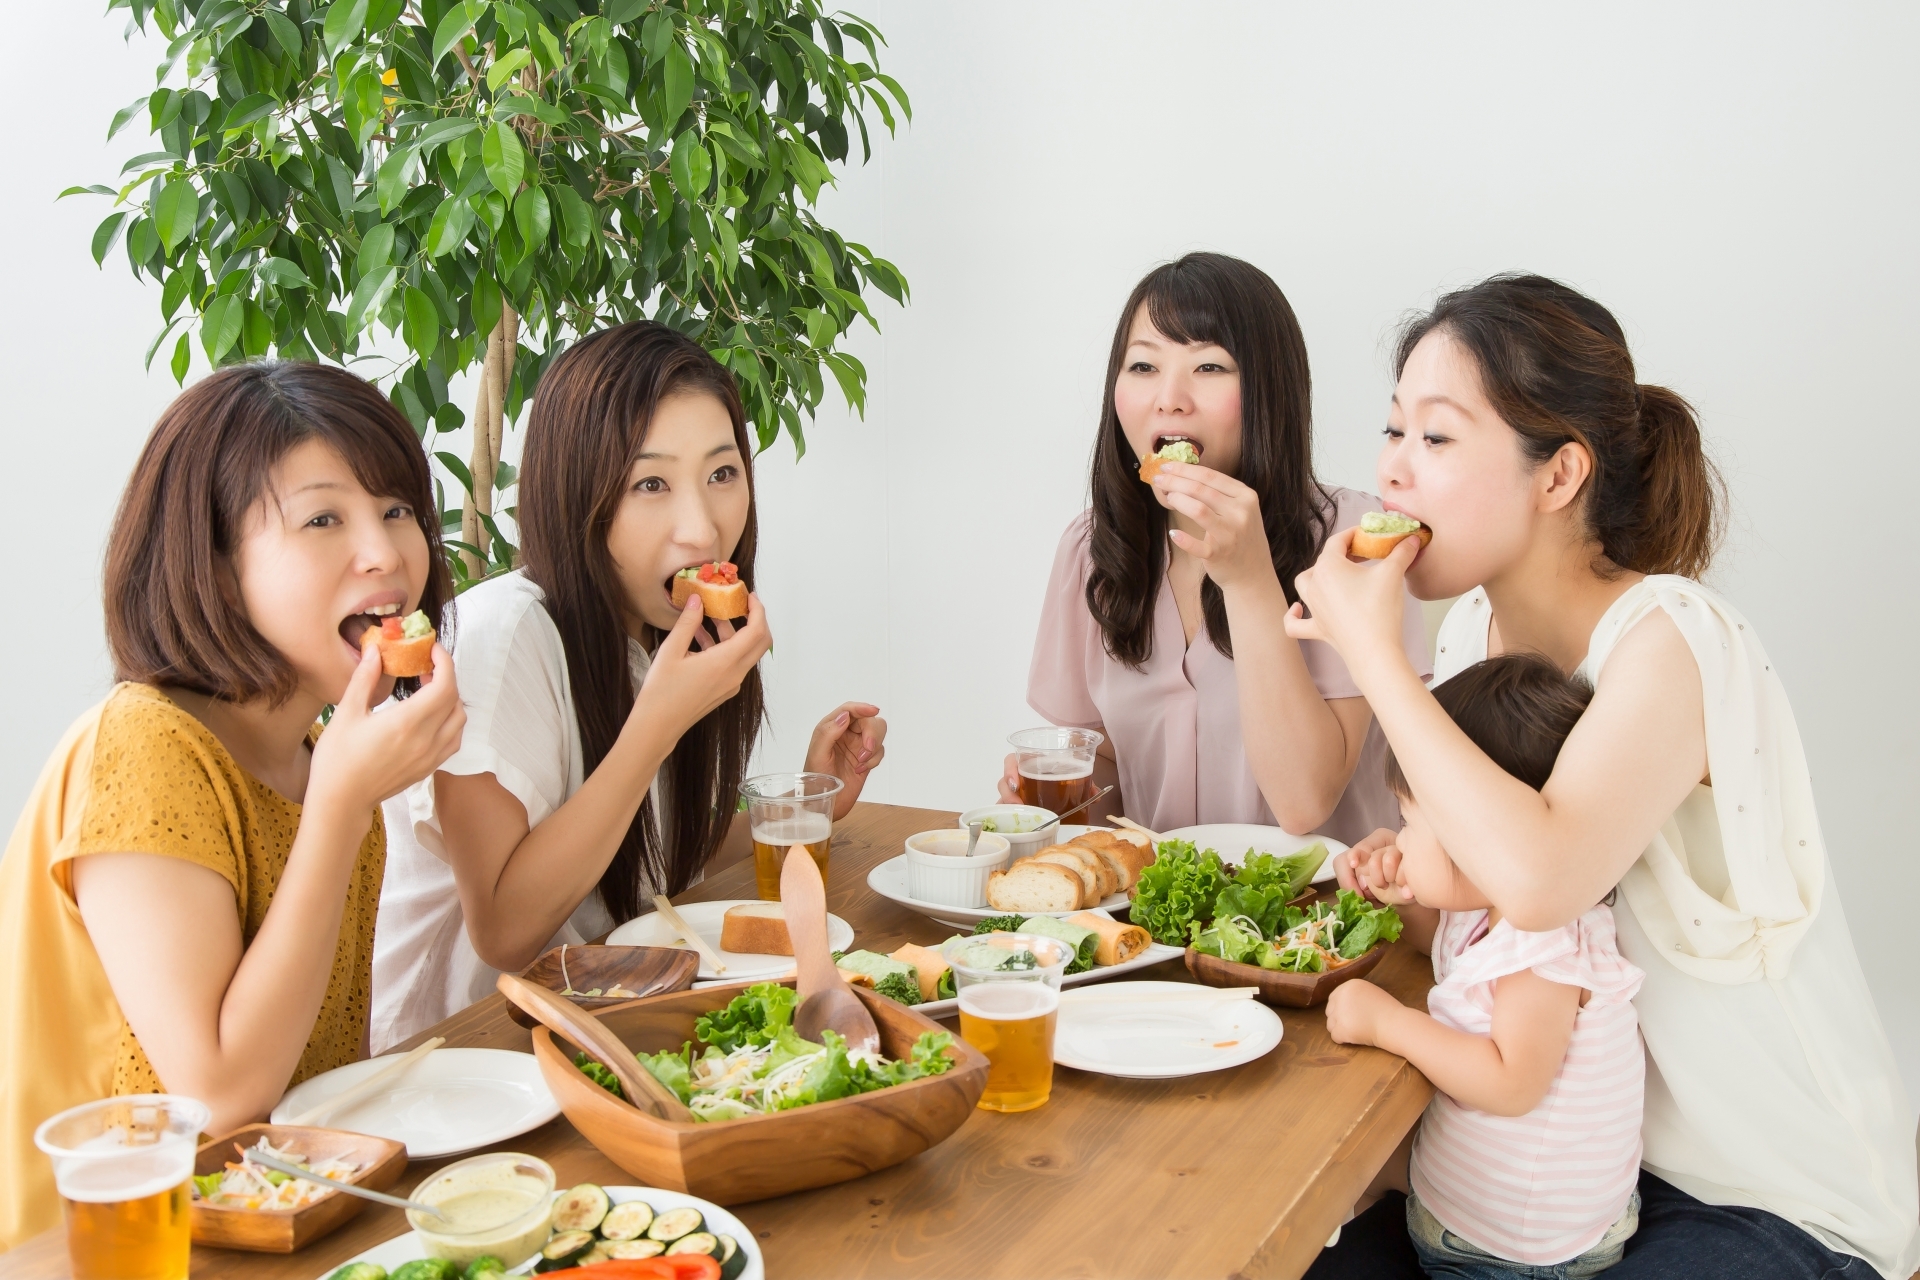 食事中の女性たちの写真